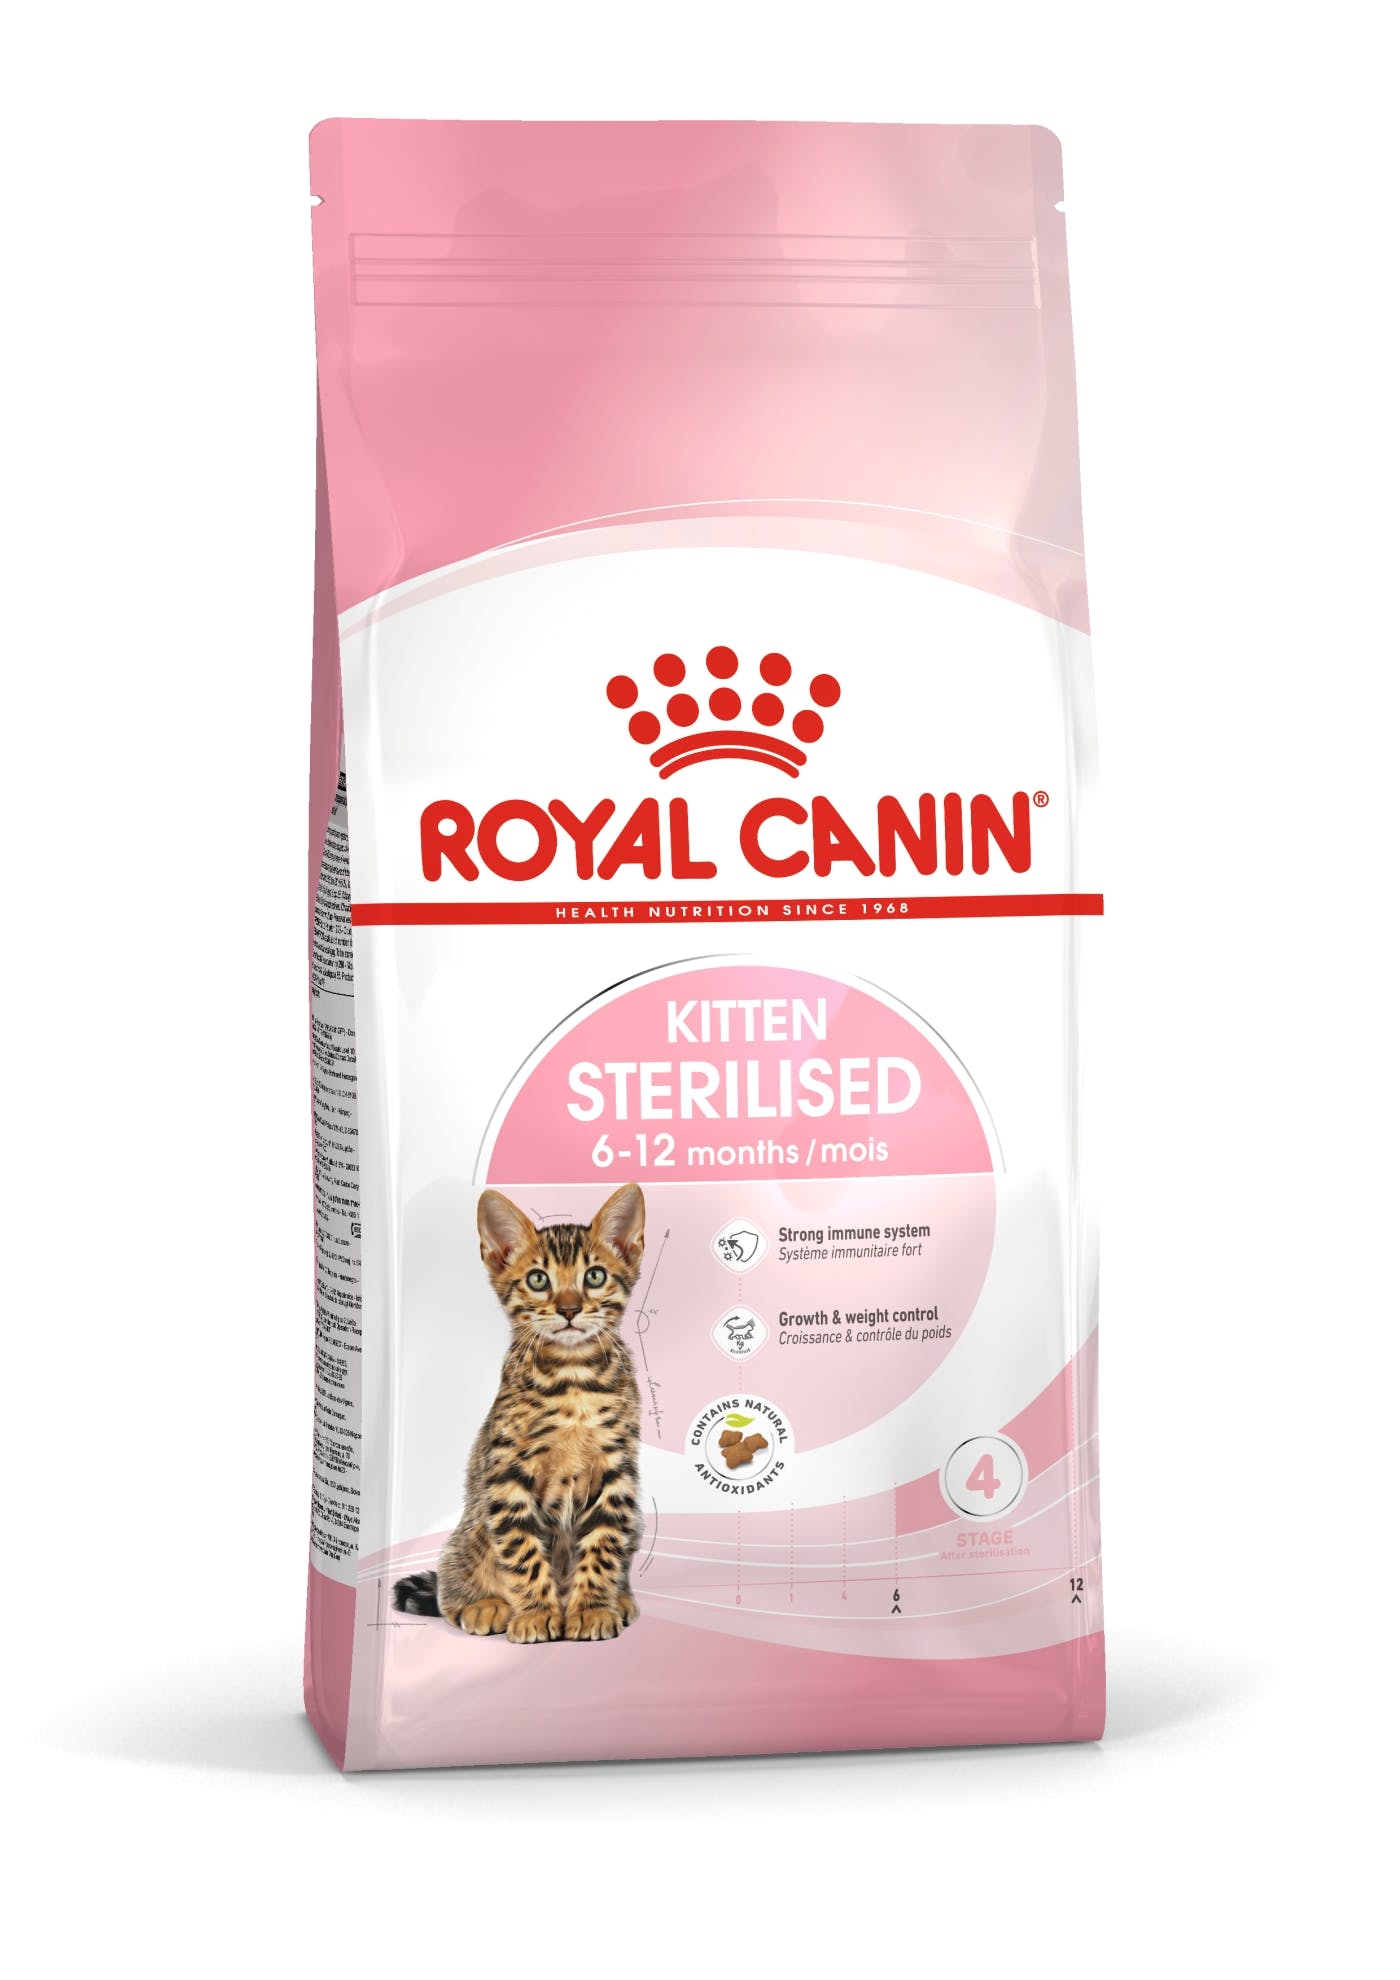 Royal Canin Kitten Sterilised til steriliserede/kastrerede killinger op til 12 måneder. 2kg.